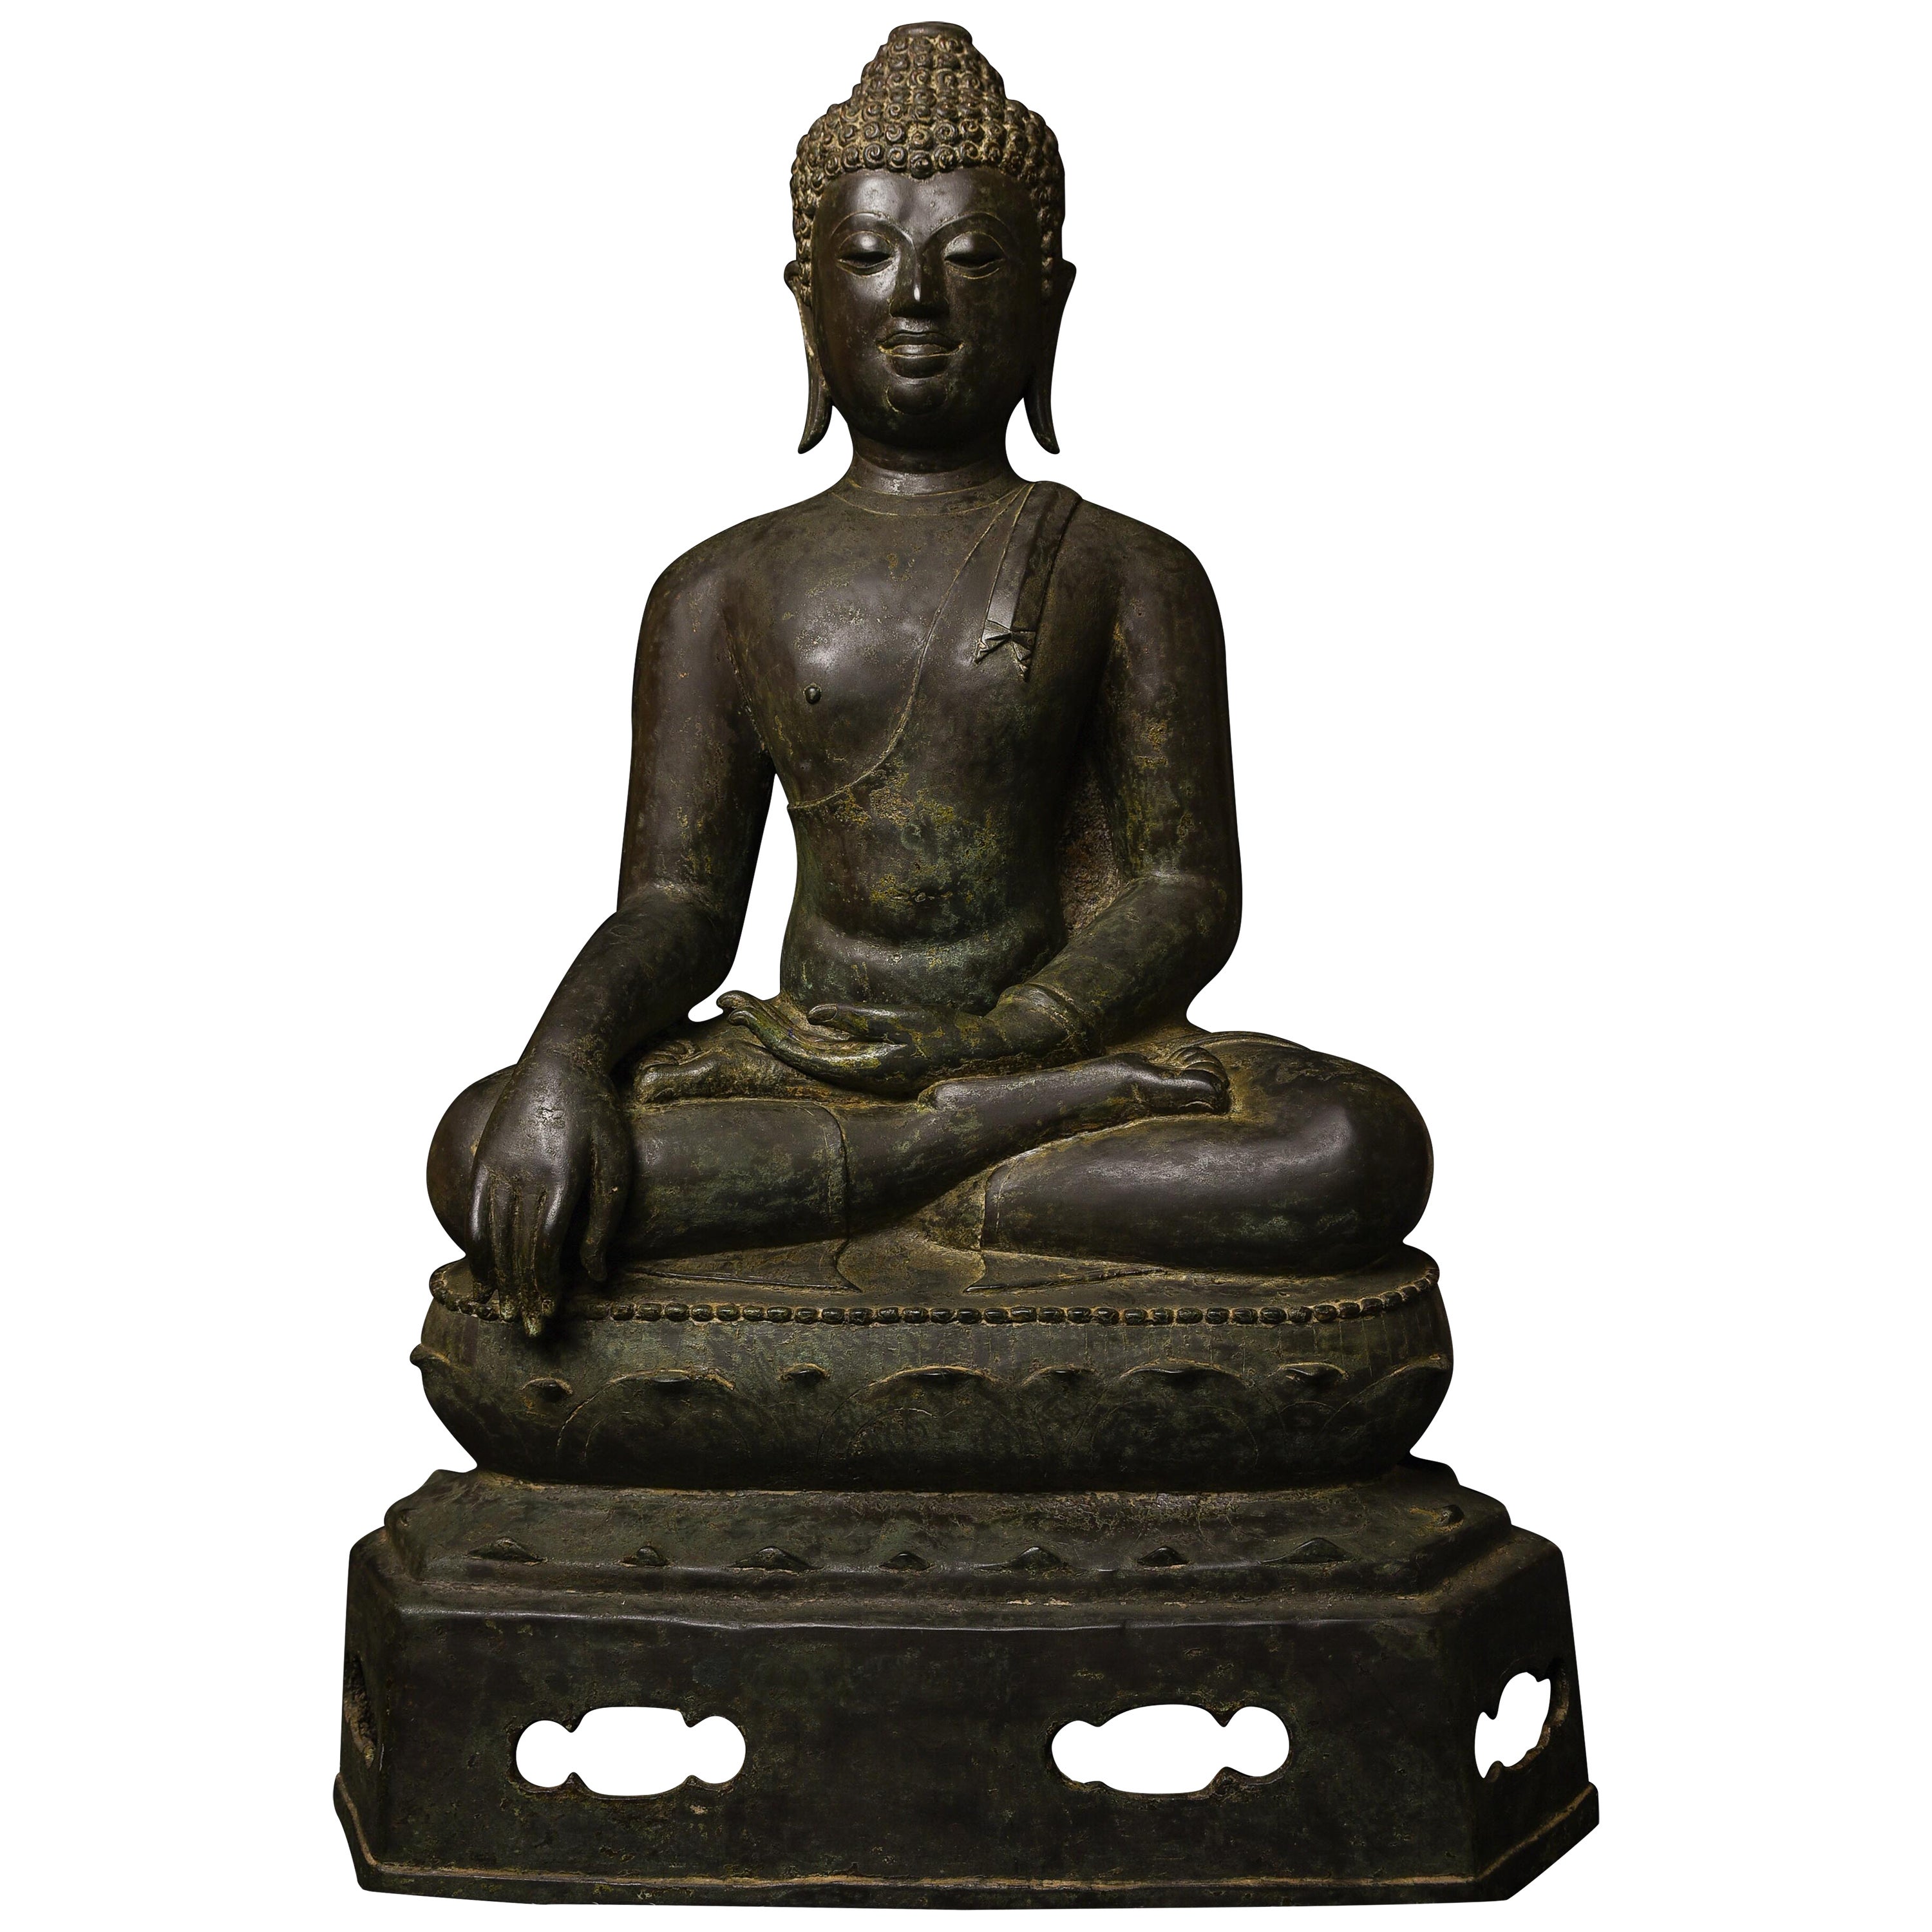 Chef-d'œuvre de Bouddha du 15e siècle en bronze de Thaïlande du Nord avec provenance - 9200